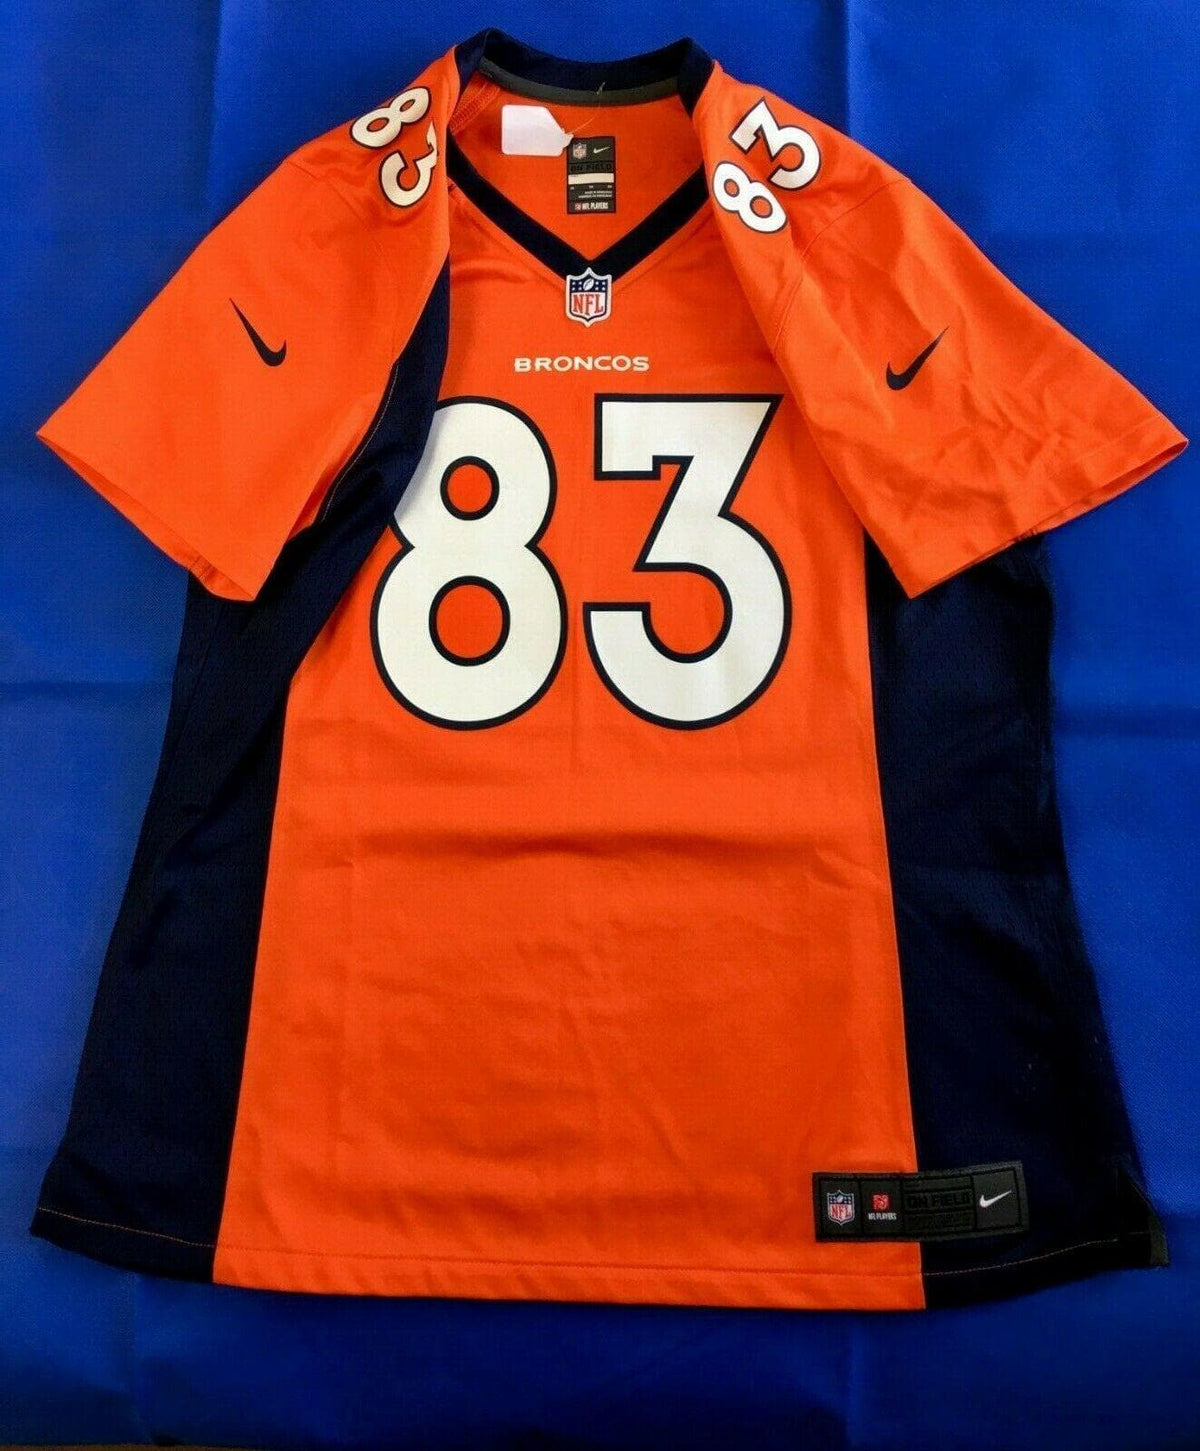 NFL Denver Broncos Wes Welker #83 Jersey Women's X-Large